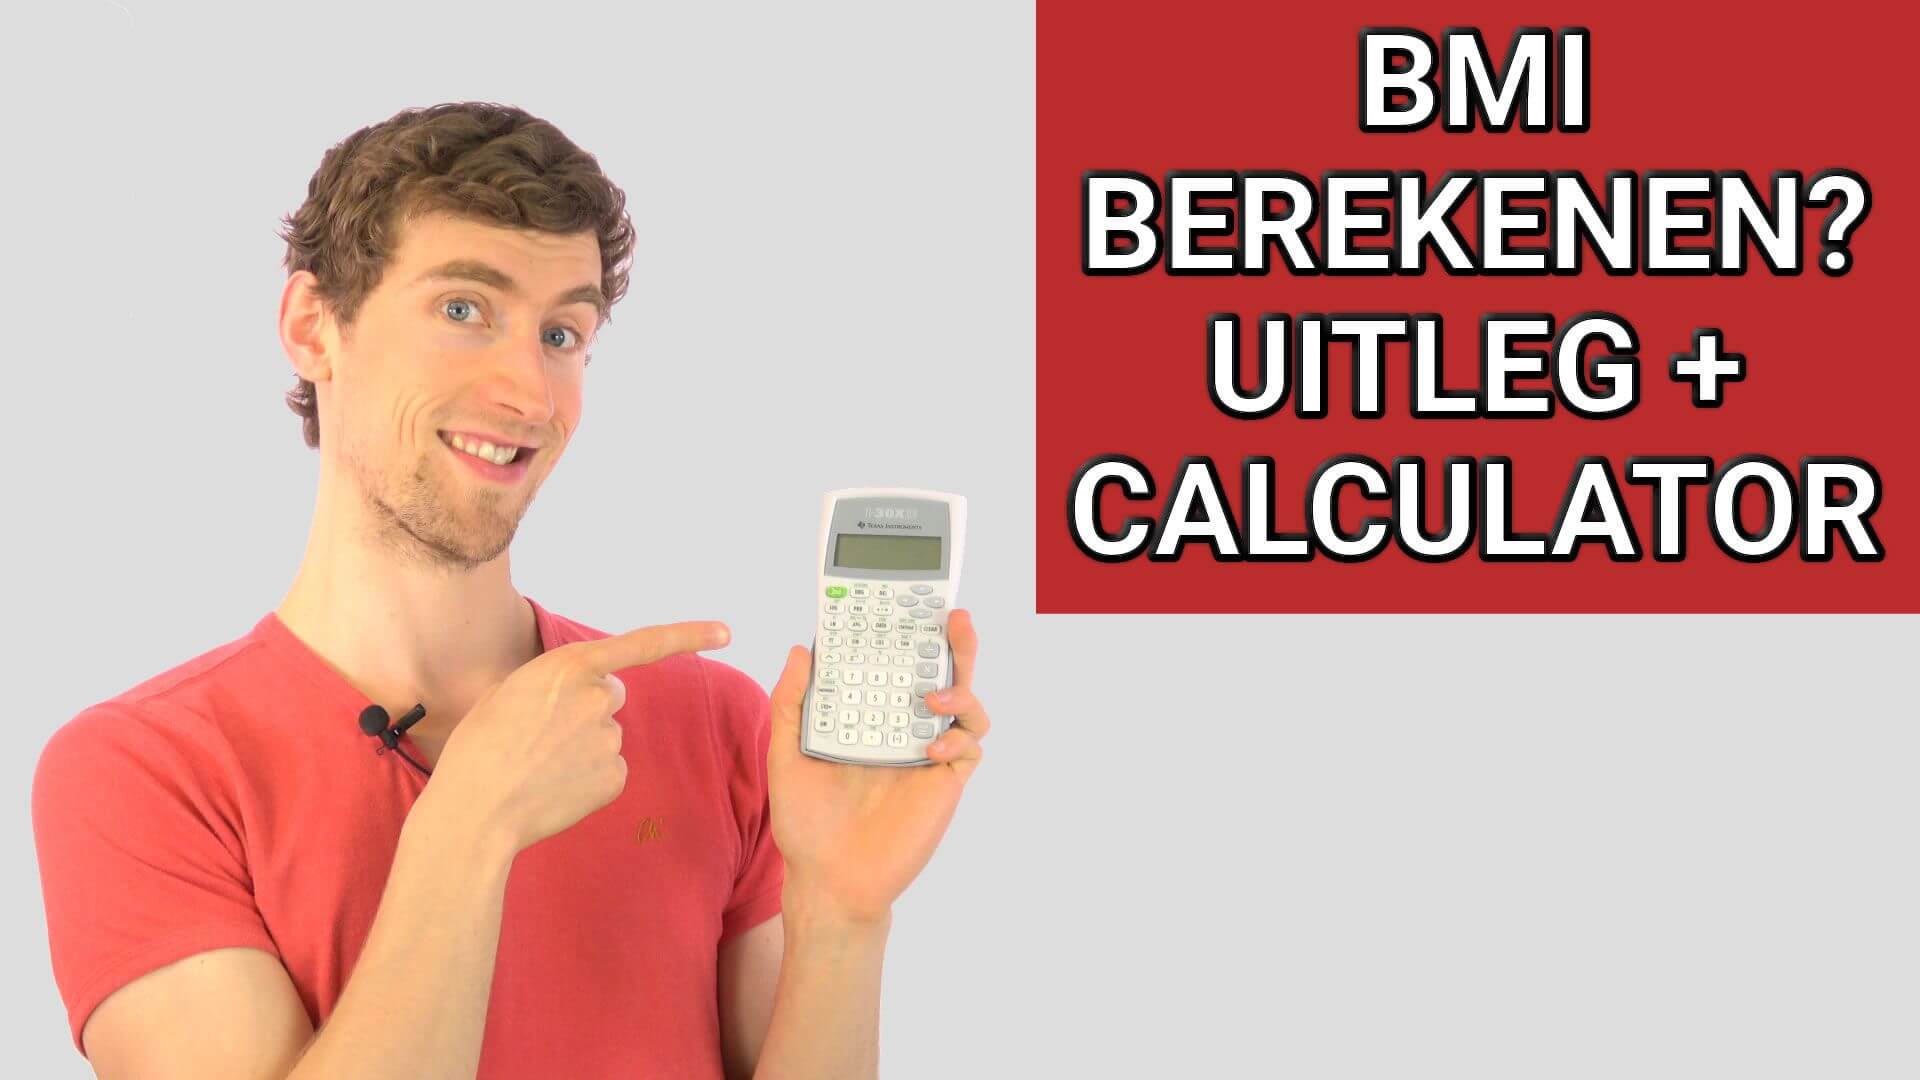 BMI Berekenen: Ideale Calculator voor Man, Vrouw en Kind